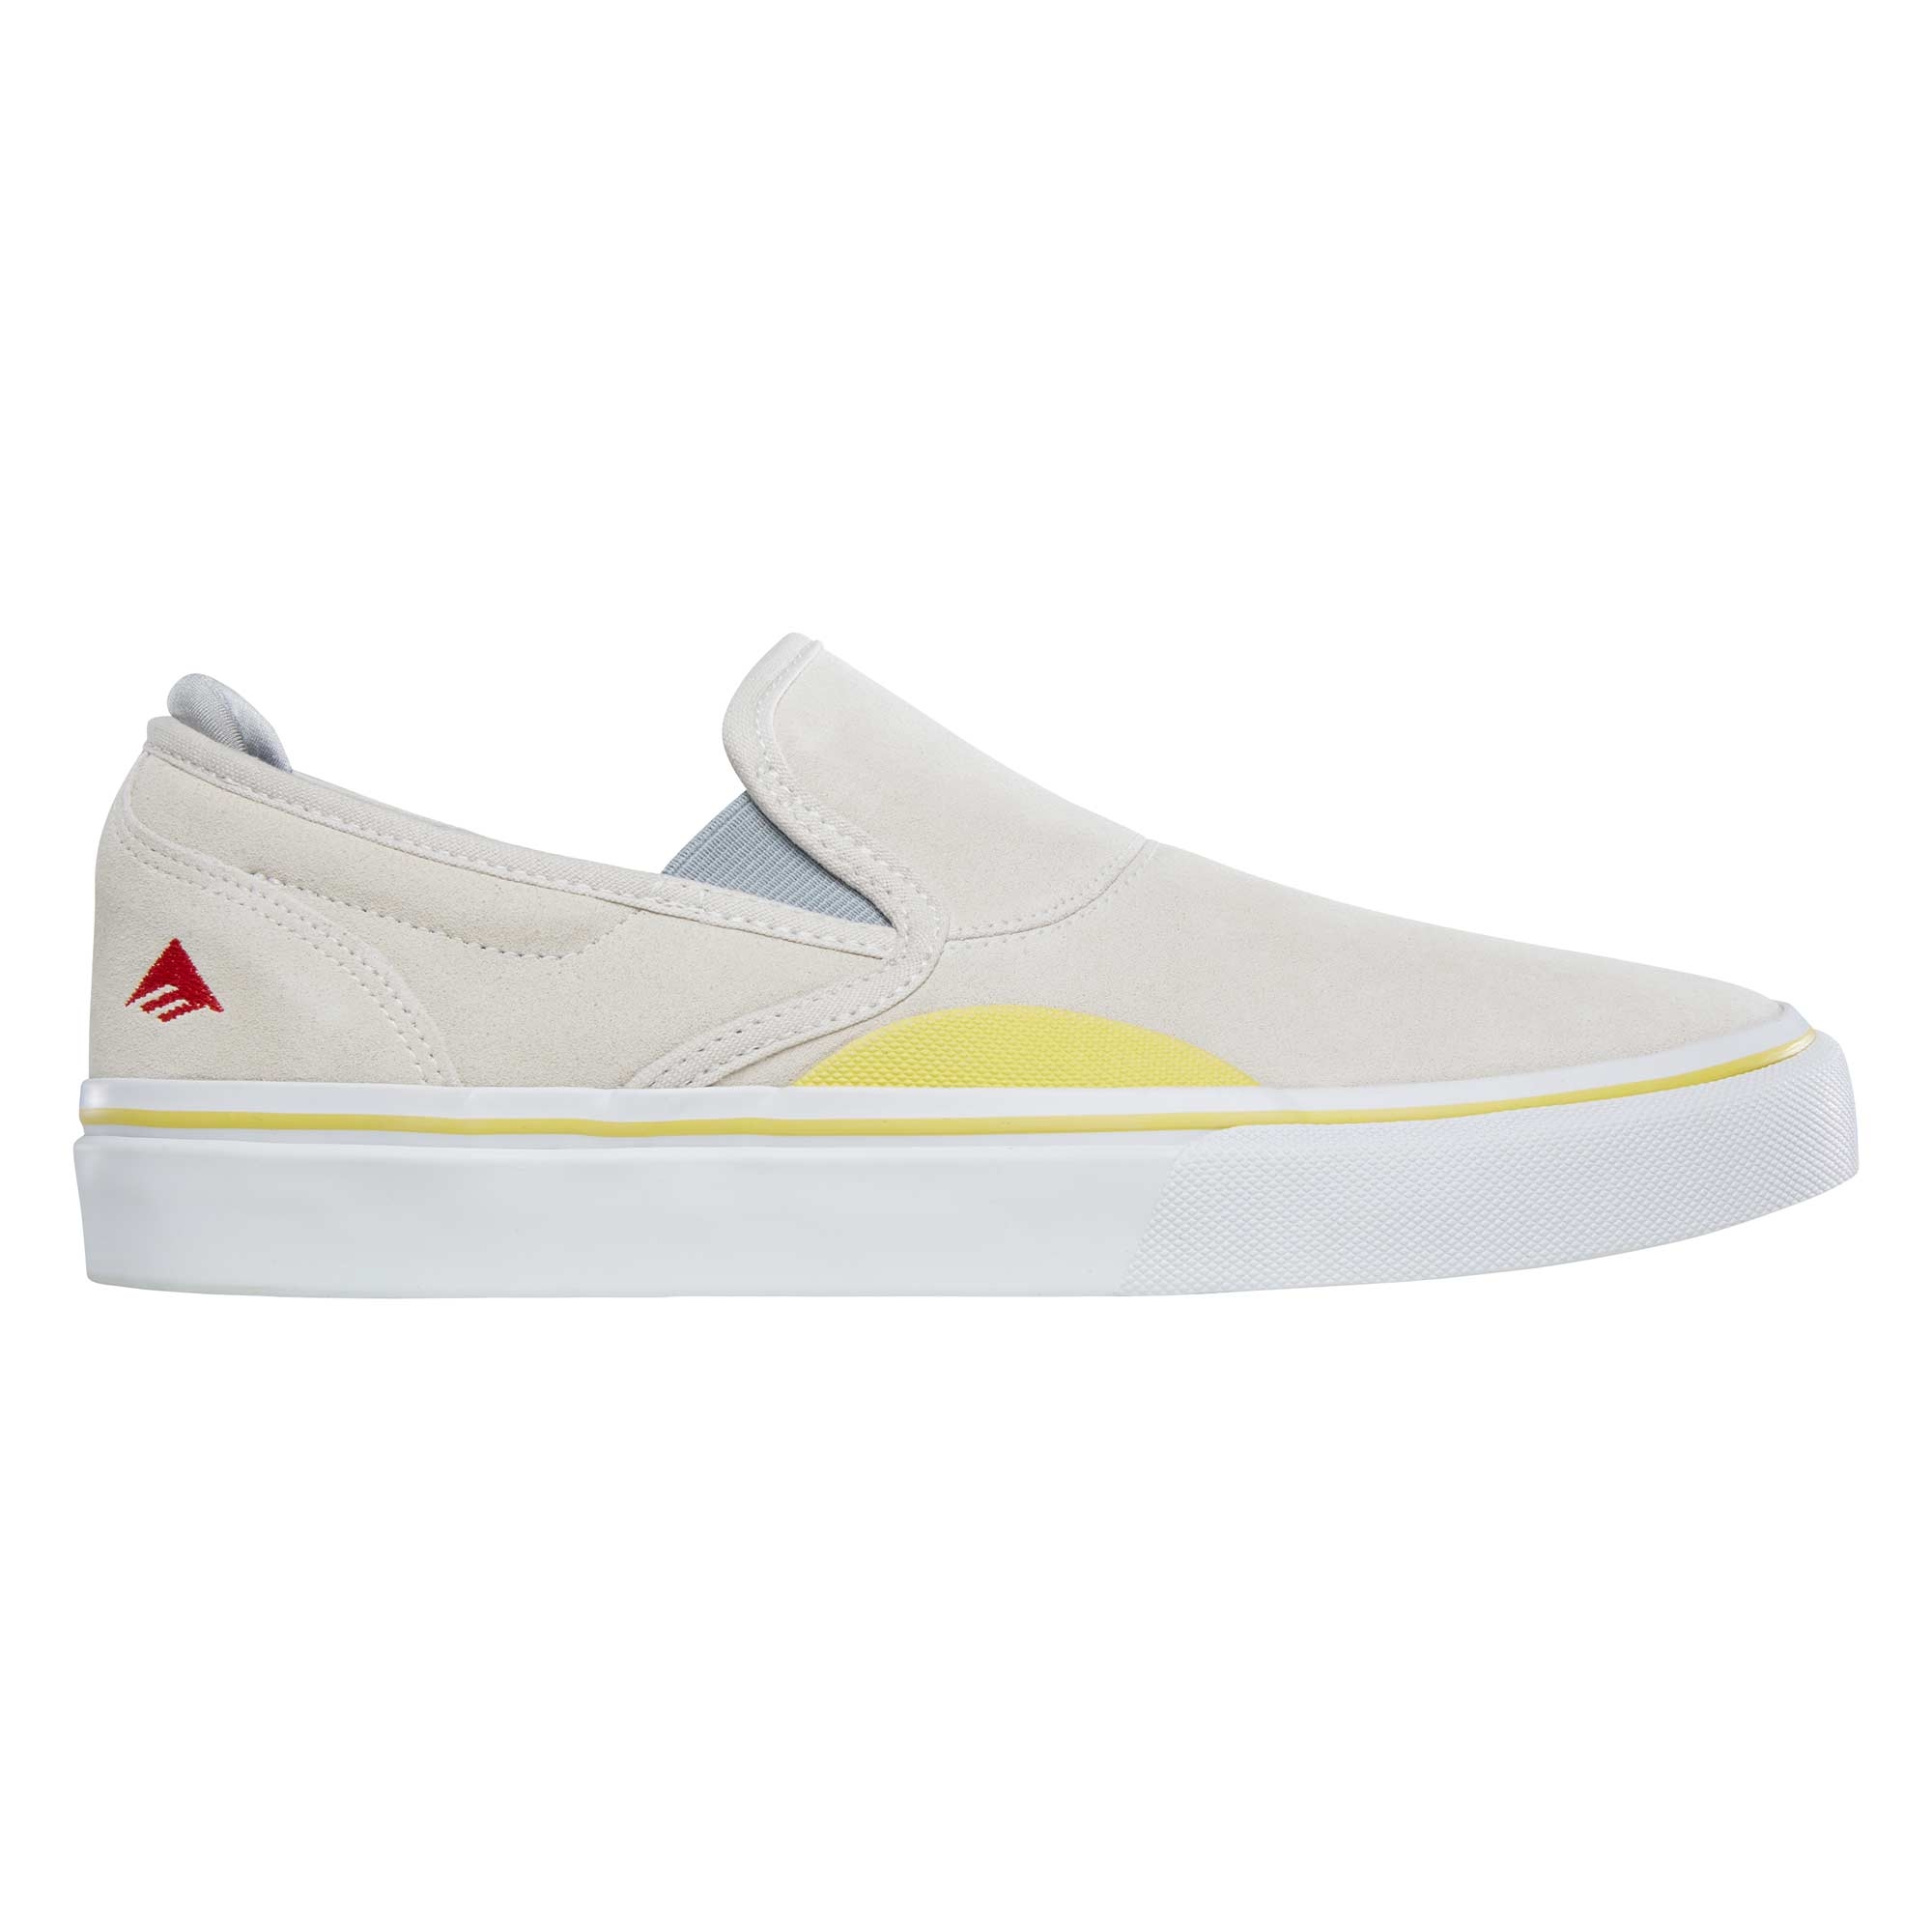 EMERICA Shoe WINO G6 SLIP-ON gry/yel grey/yellow